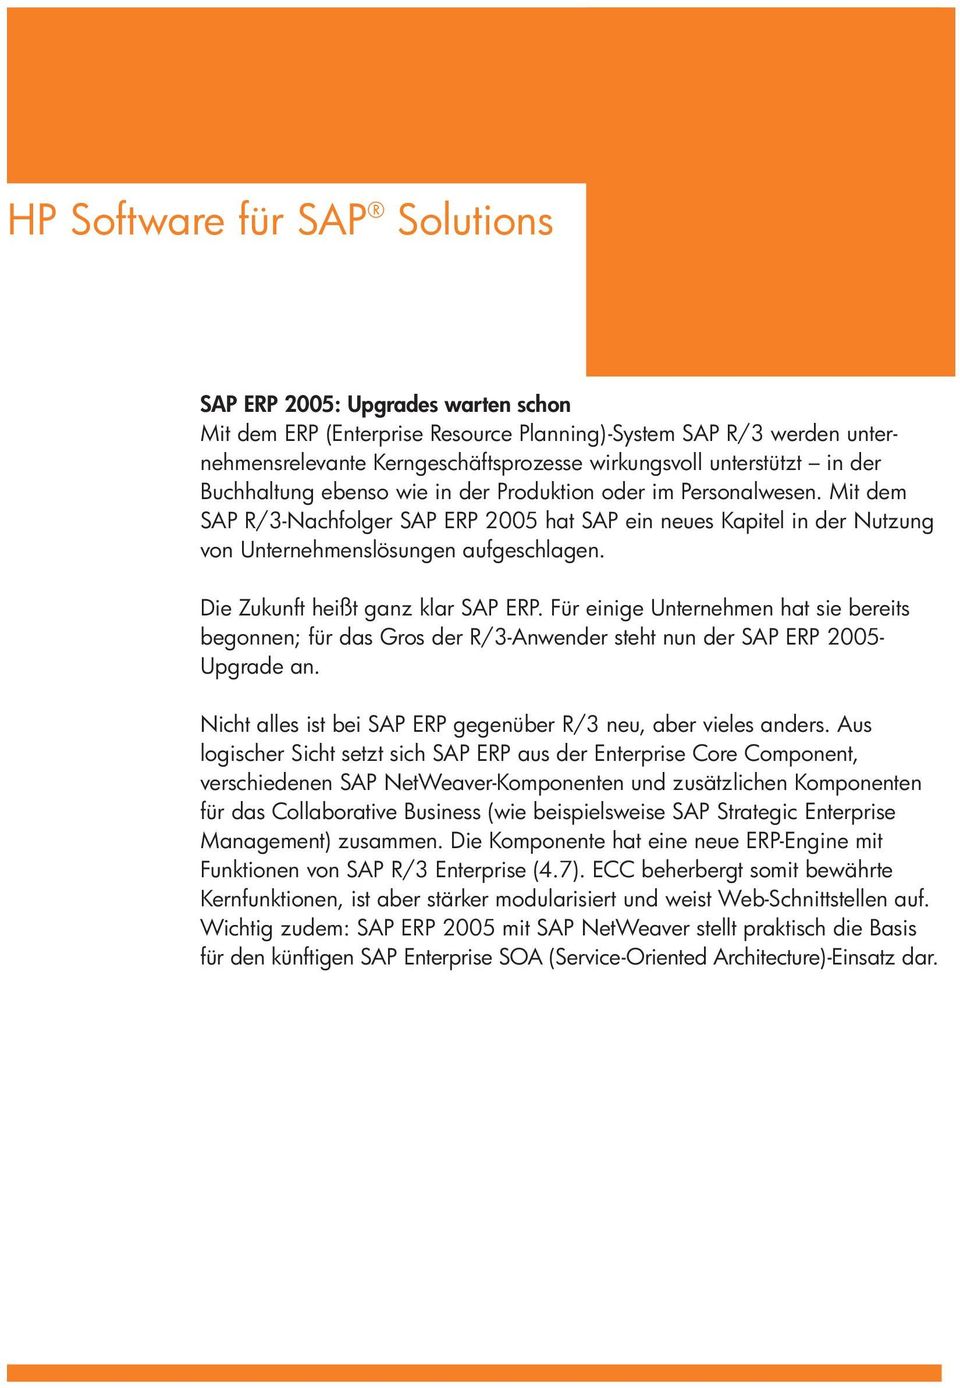 Die Zukunft heißt ganz klar SAP ERP. Für einige Unternehmen hat sie bereits begonnen; für das Gros der R/3-Anwender steht nun der SAP ERP 2005- Upgrade an.